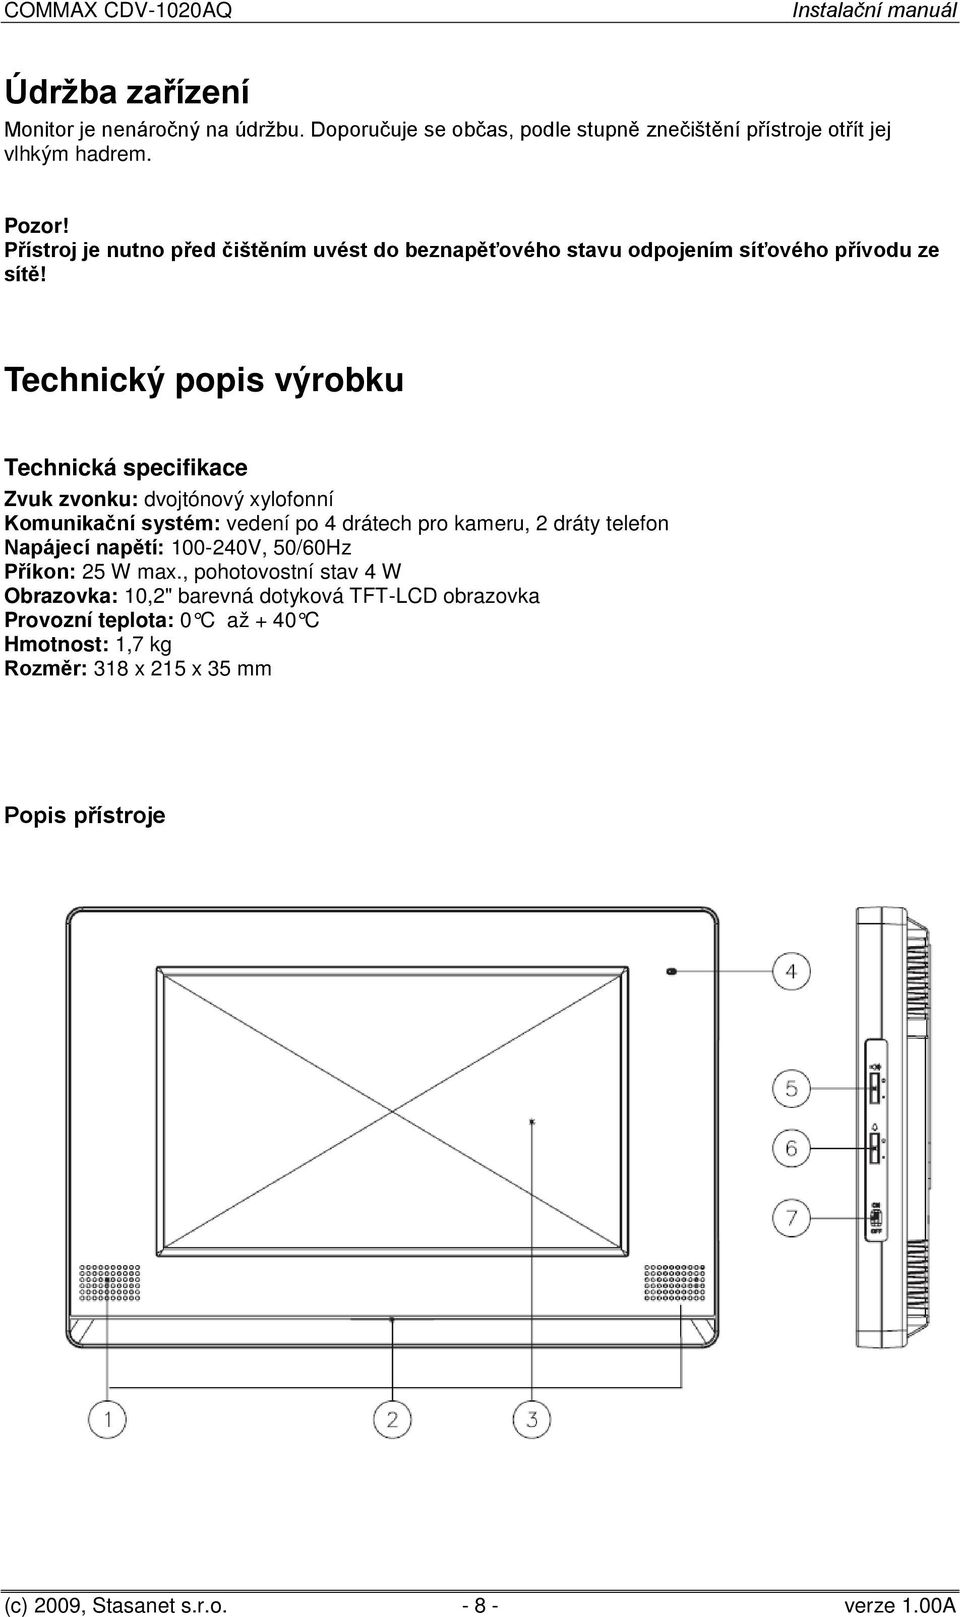 Technický popis výrobku Technická specifikace Zvuk zvonku: dvojtónový xylofonní Komunikační systém: vedení po 4 drátech pro kameru, 2 dráty telefon Napájecí